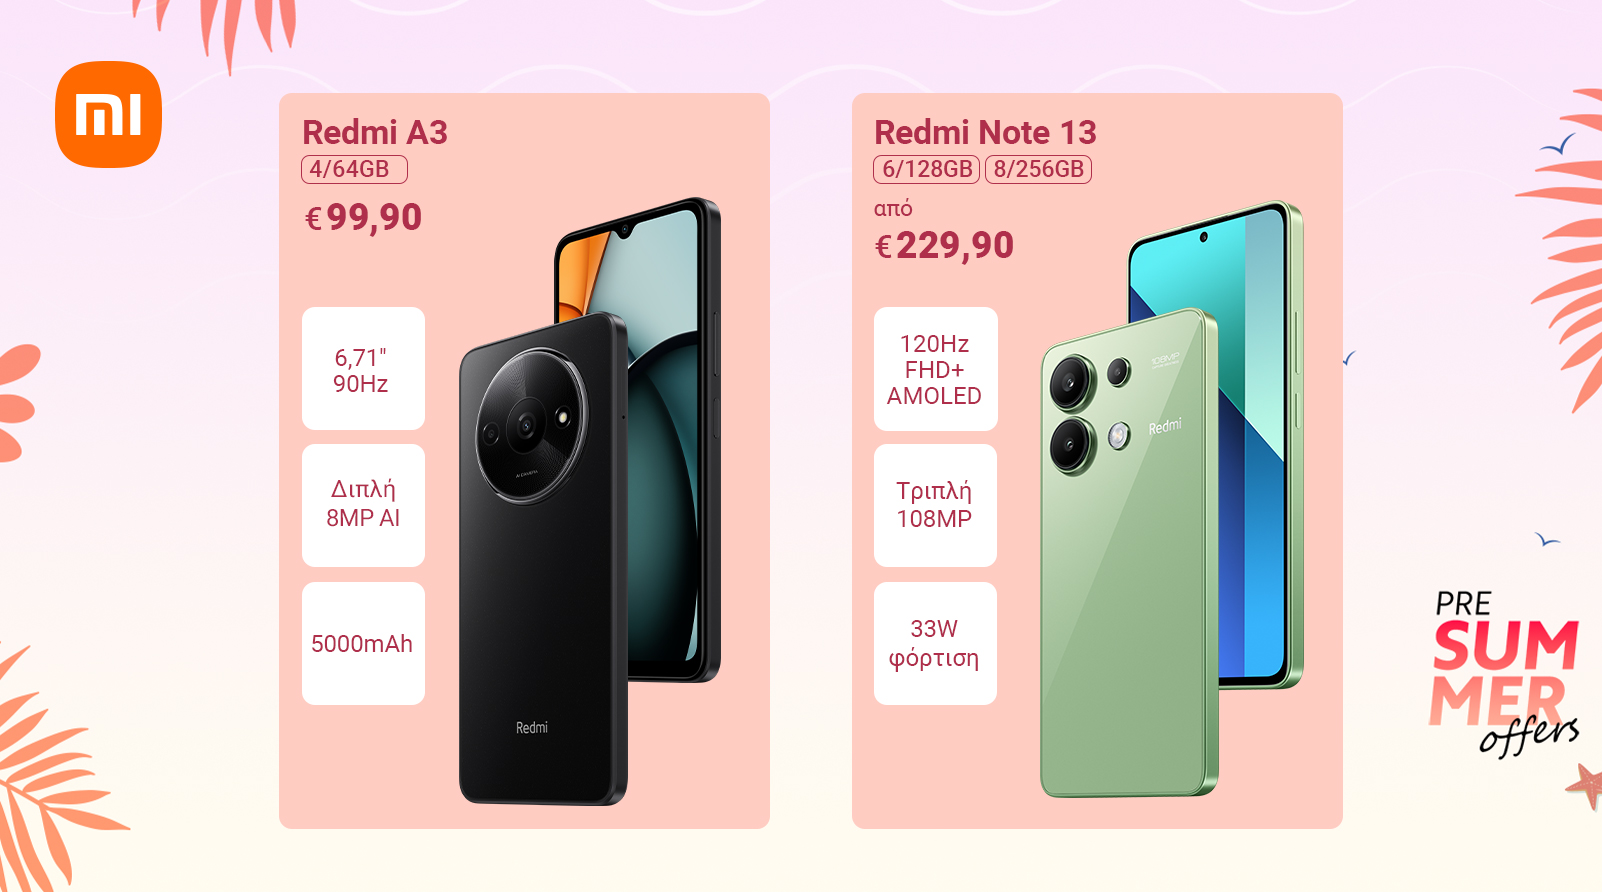 Xiaomi Pre-Summer Offers